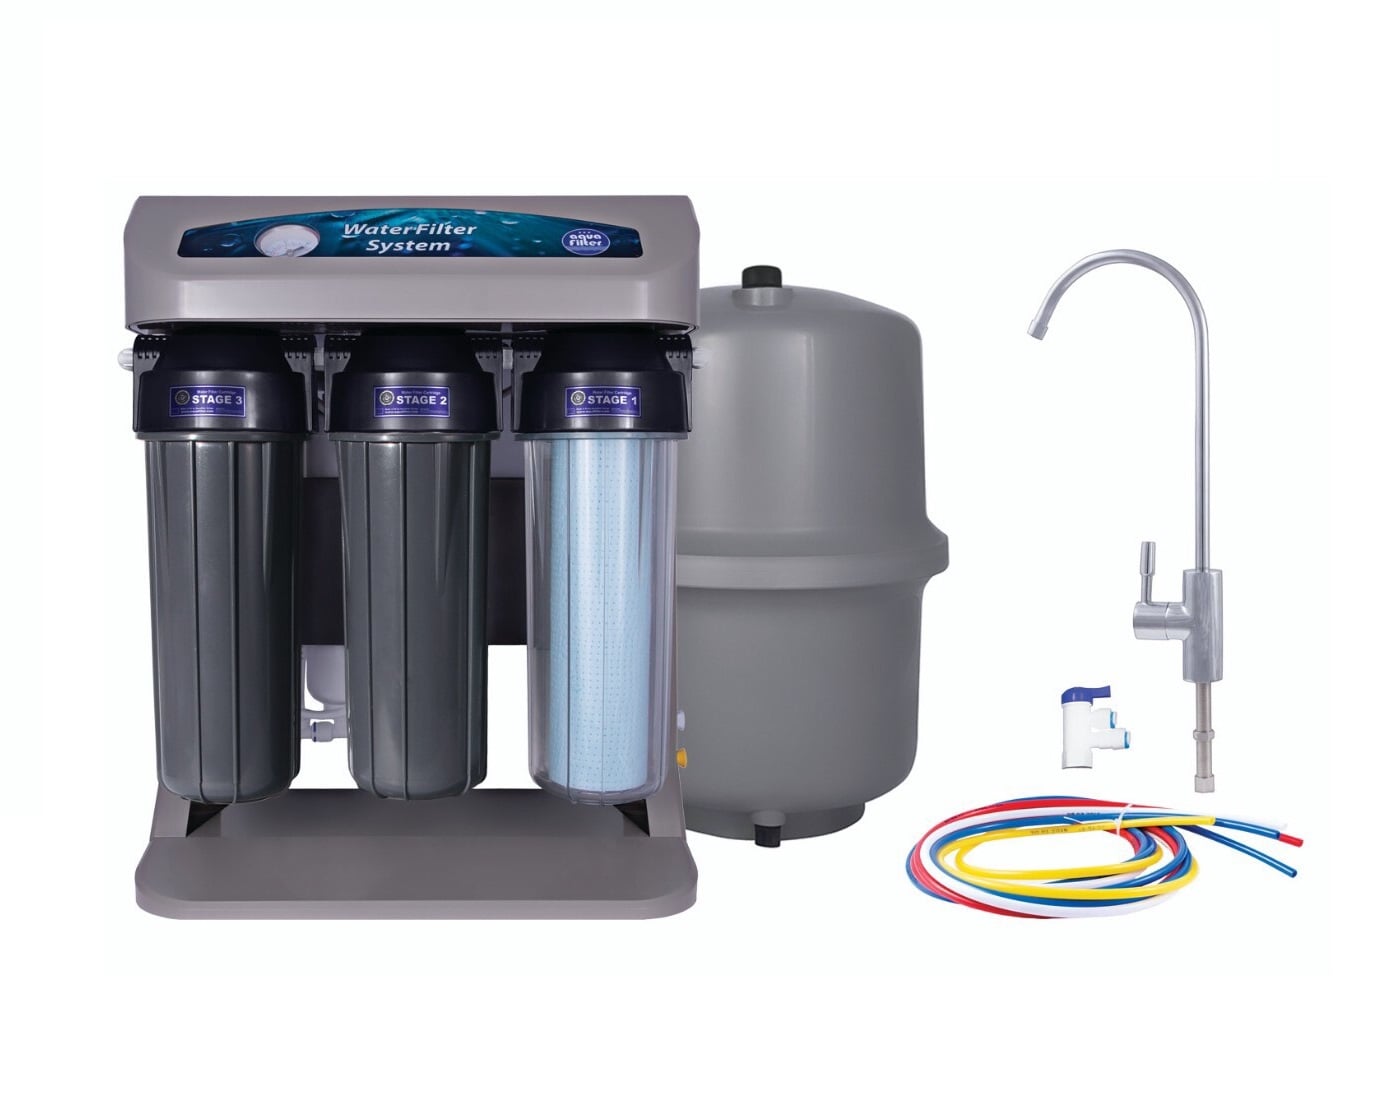 Khi mua máy lọc nước bạn cần căn cứ vào bộ tiêu chí lựa chọn được Aquafilter chia sẻ để có quyết định đúng đắn nhất